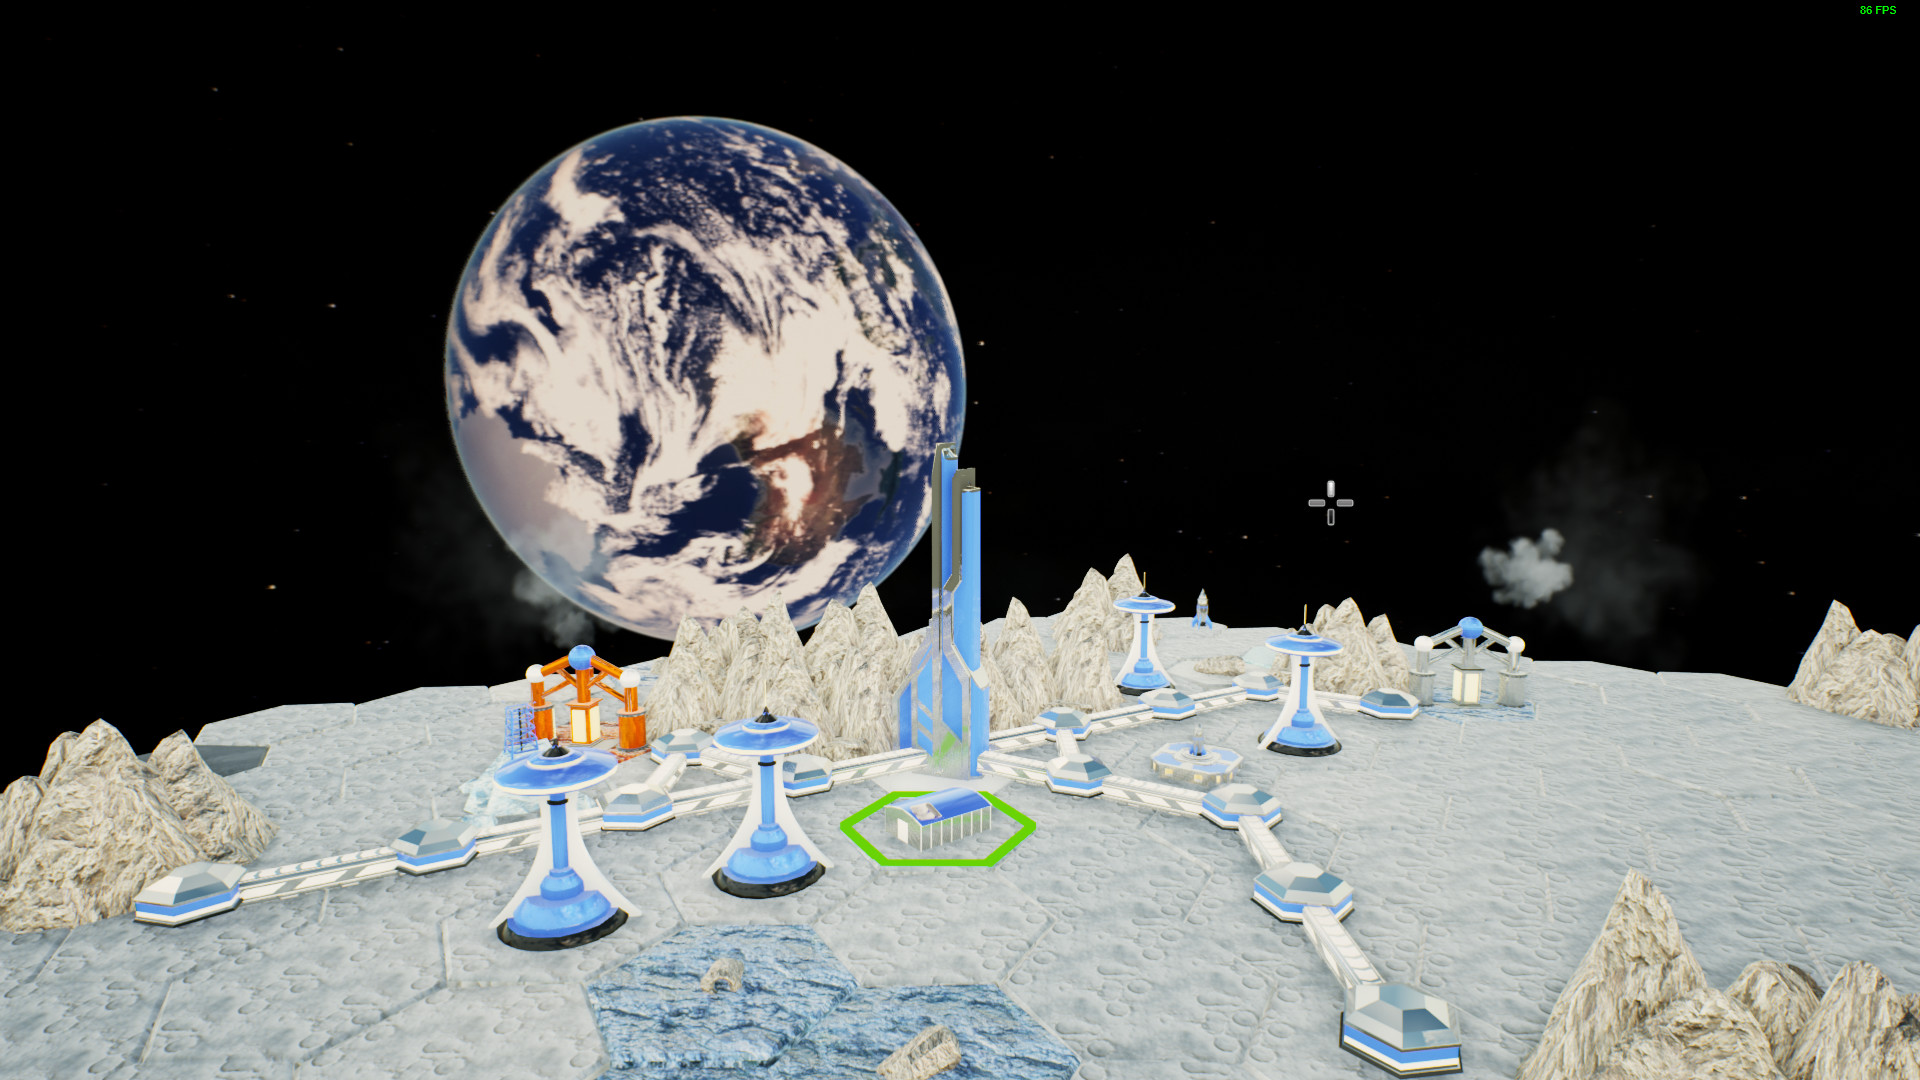 Visão  Astroneer, o Minecraft do espaço?